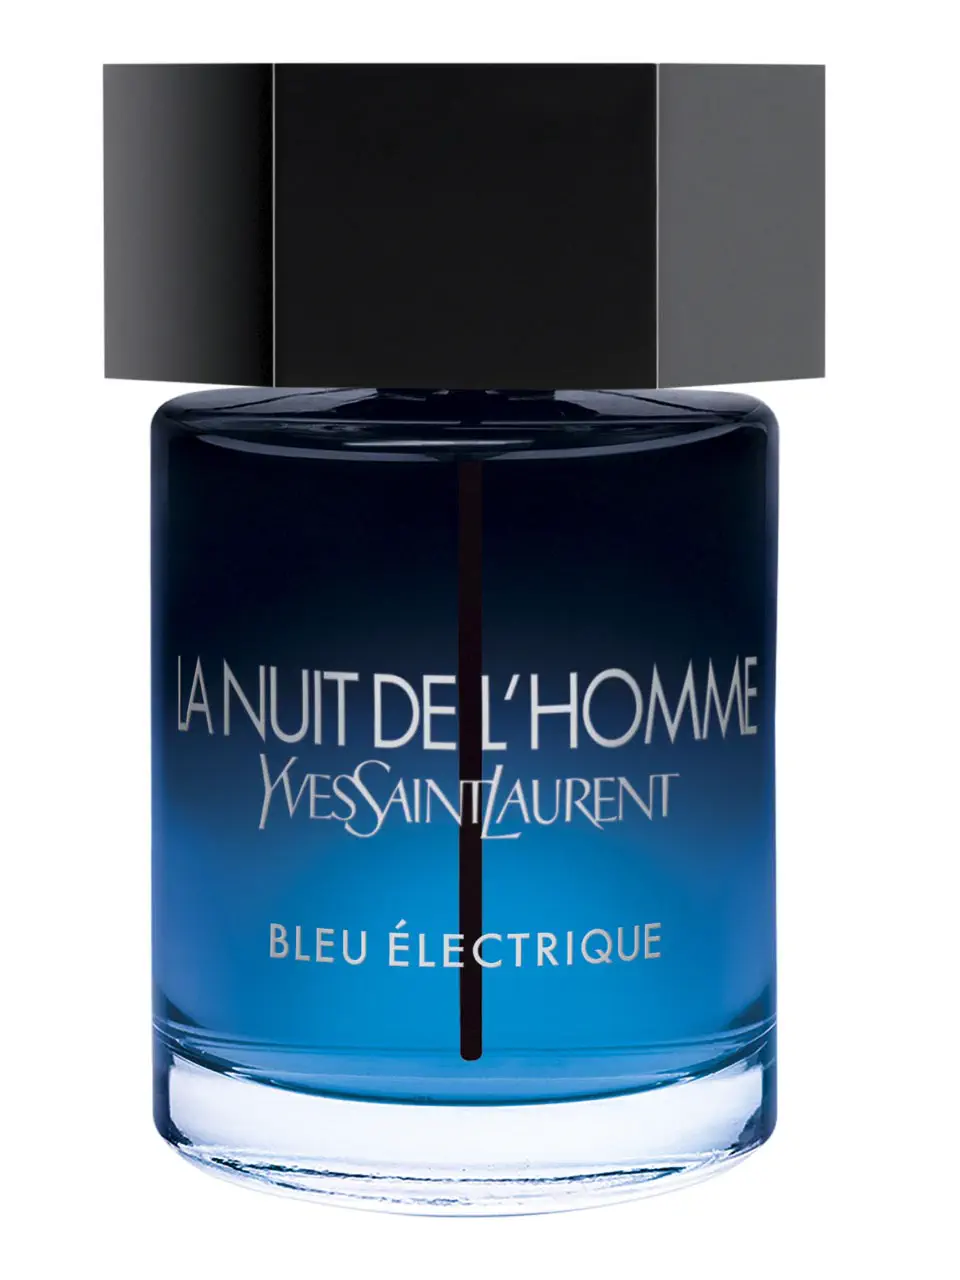 Art & Parfum Enigma Bleu Nuit Eau de Parfum for men 100 ml